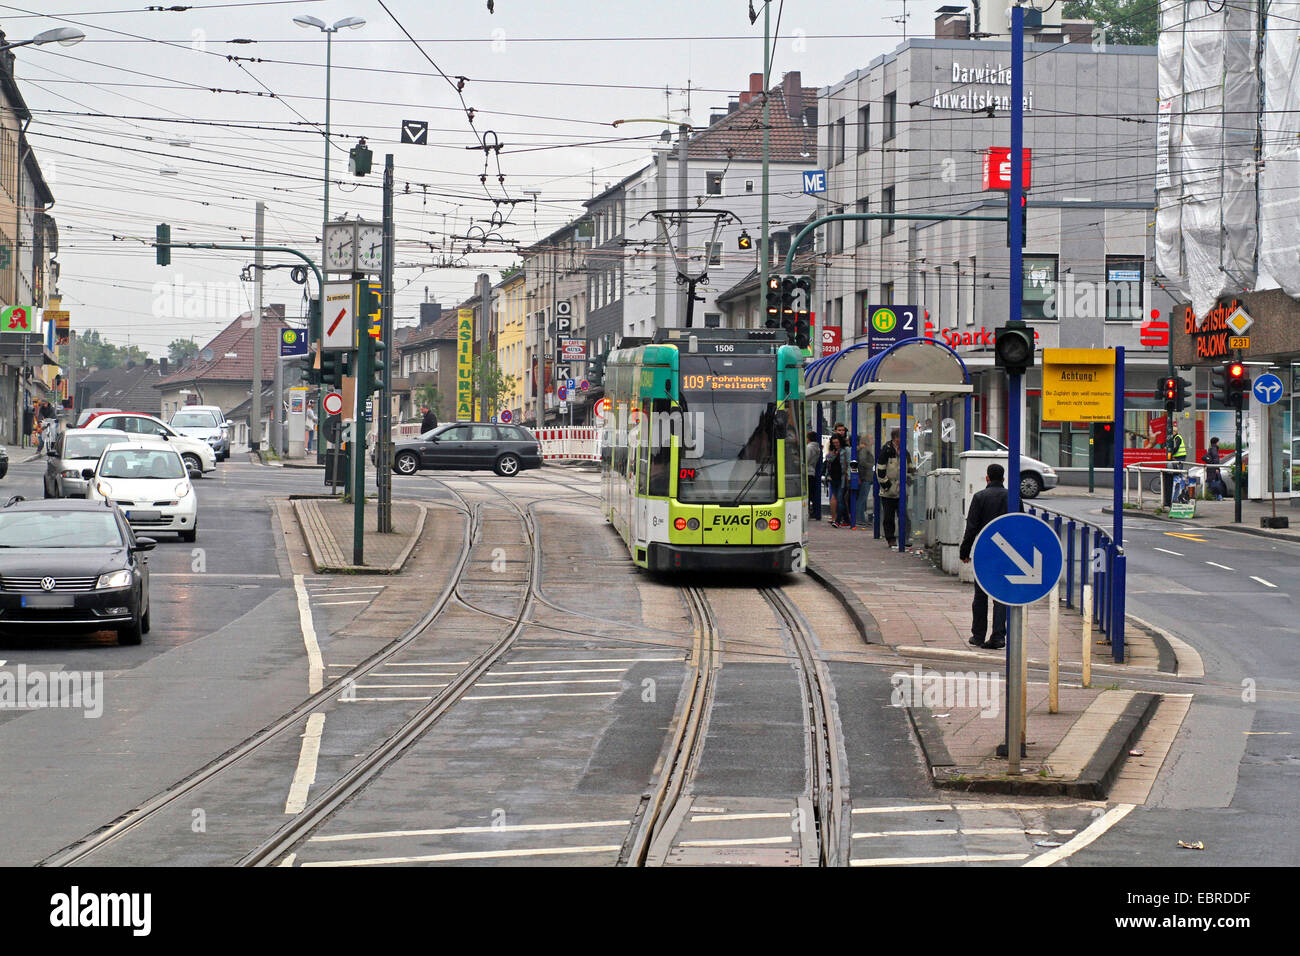 Rue avec le tramway et la station de tramway, Allemagne Banque D'Images